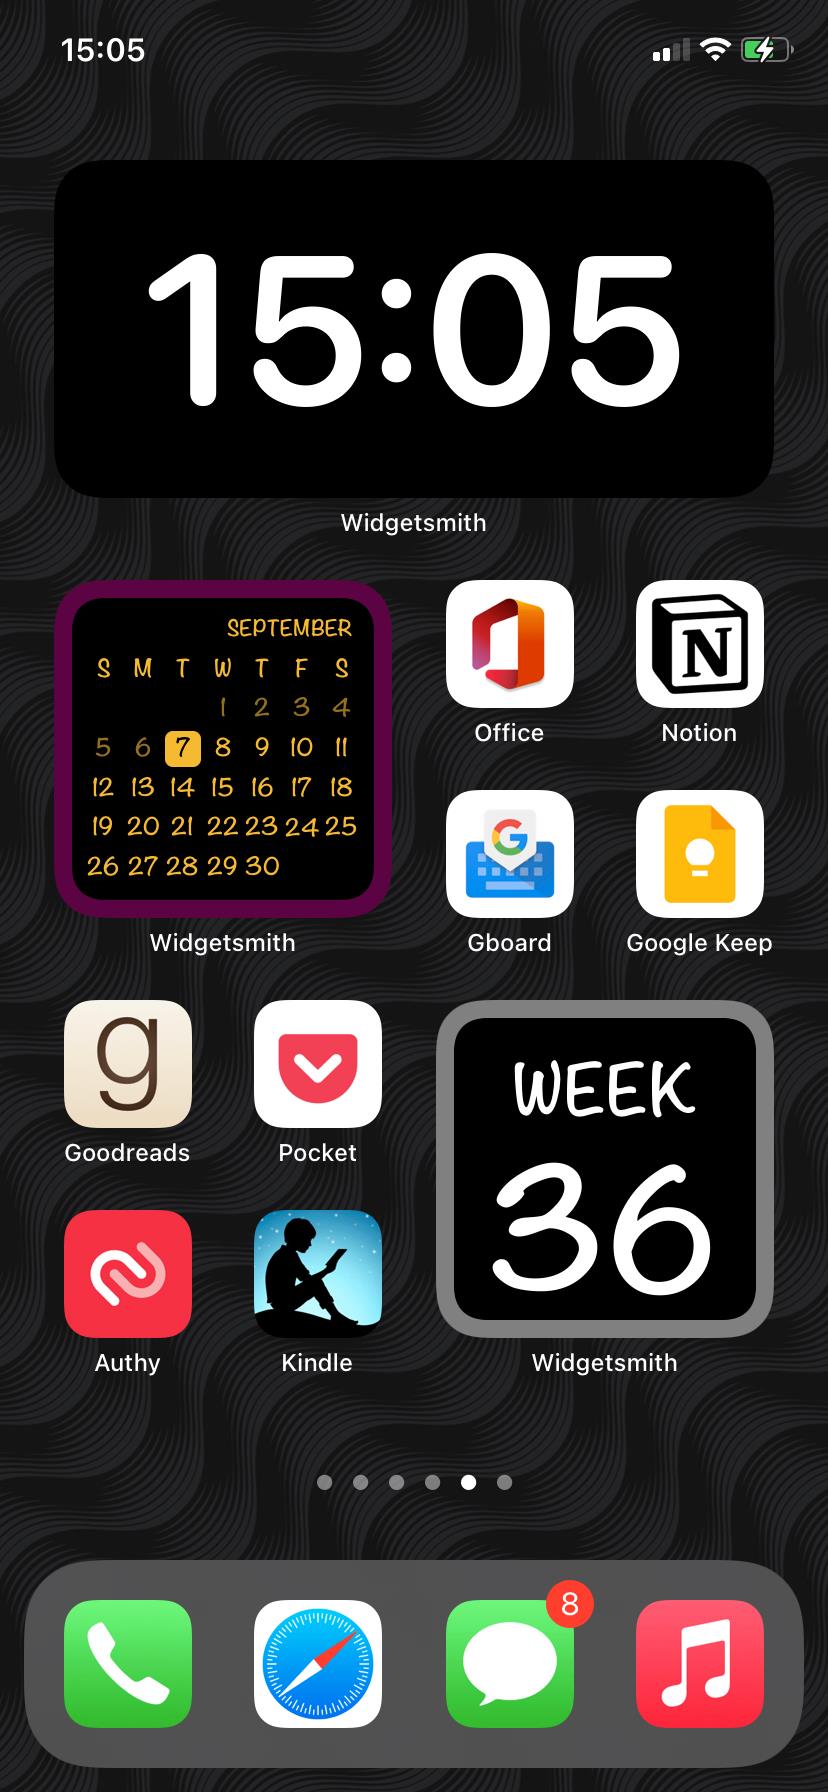 Comment utiliser Widgetsmith pour créer des widgets sur iPhone ou iPad